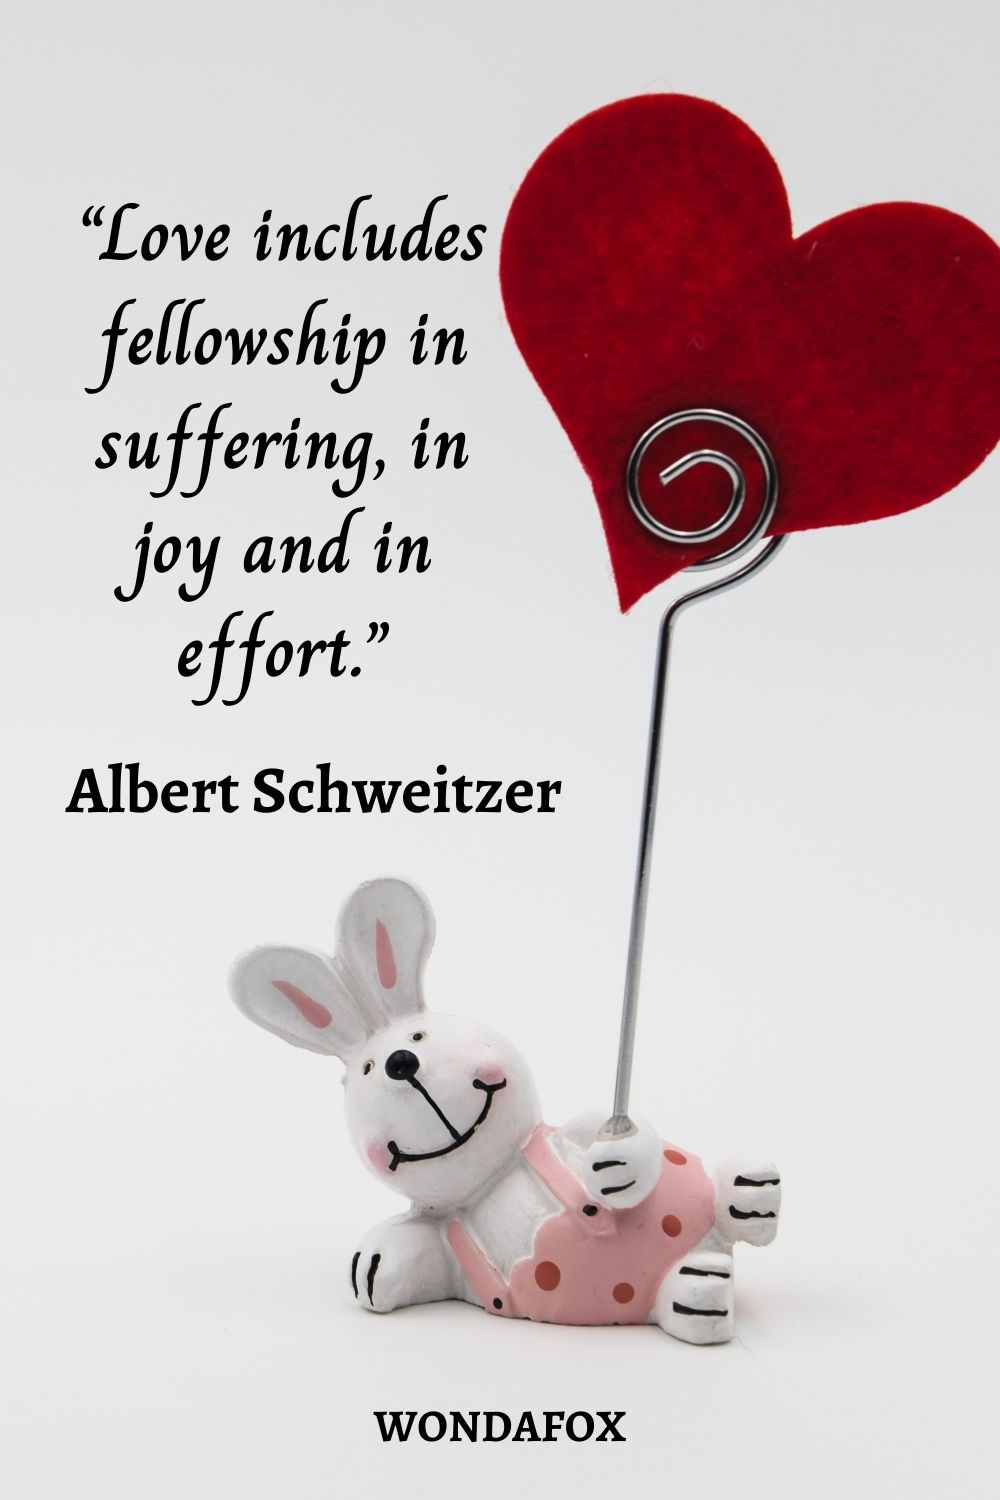 “Love includes fellowship in suffering, in joy and in effort.”
Albert Schweitzer